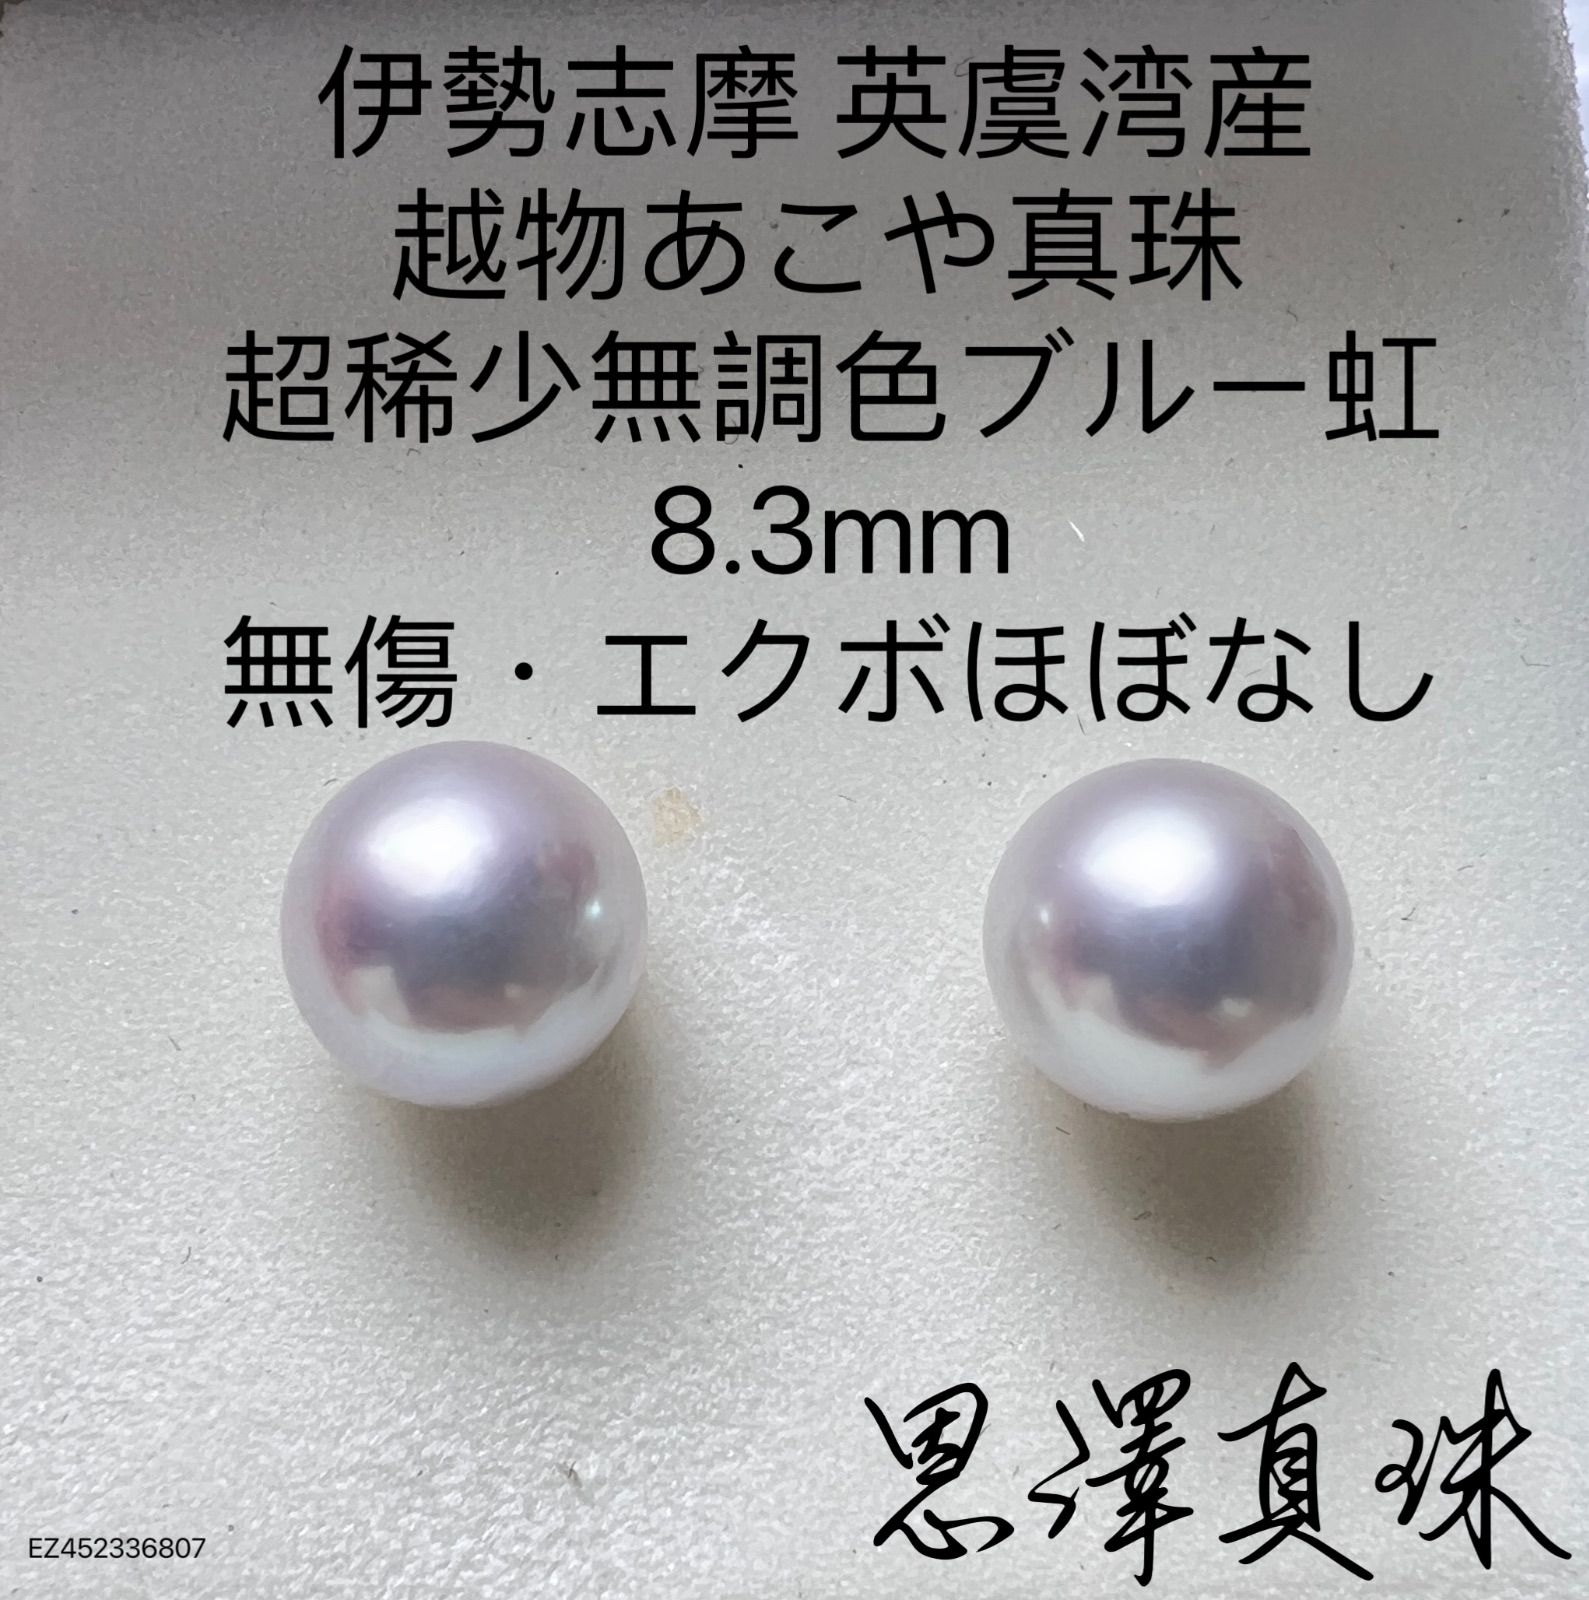 少し検討させて下さいませ日本製伊勢志摩英虞湾産お越し物あこや真珠無調色大珠9.4mm シャンパンゴールド